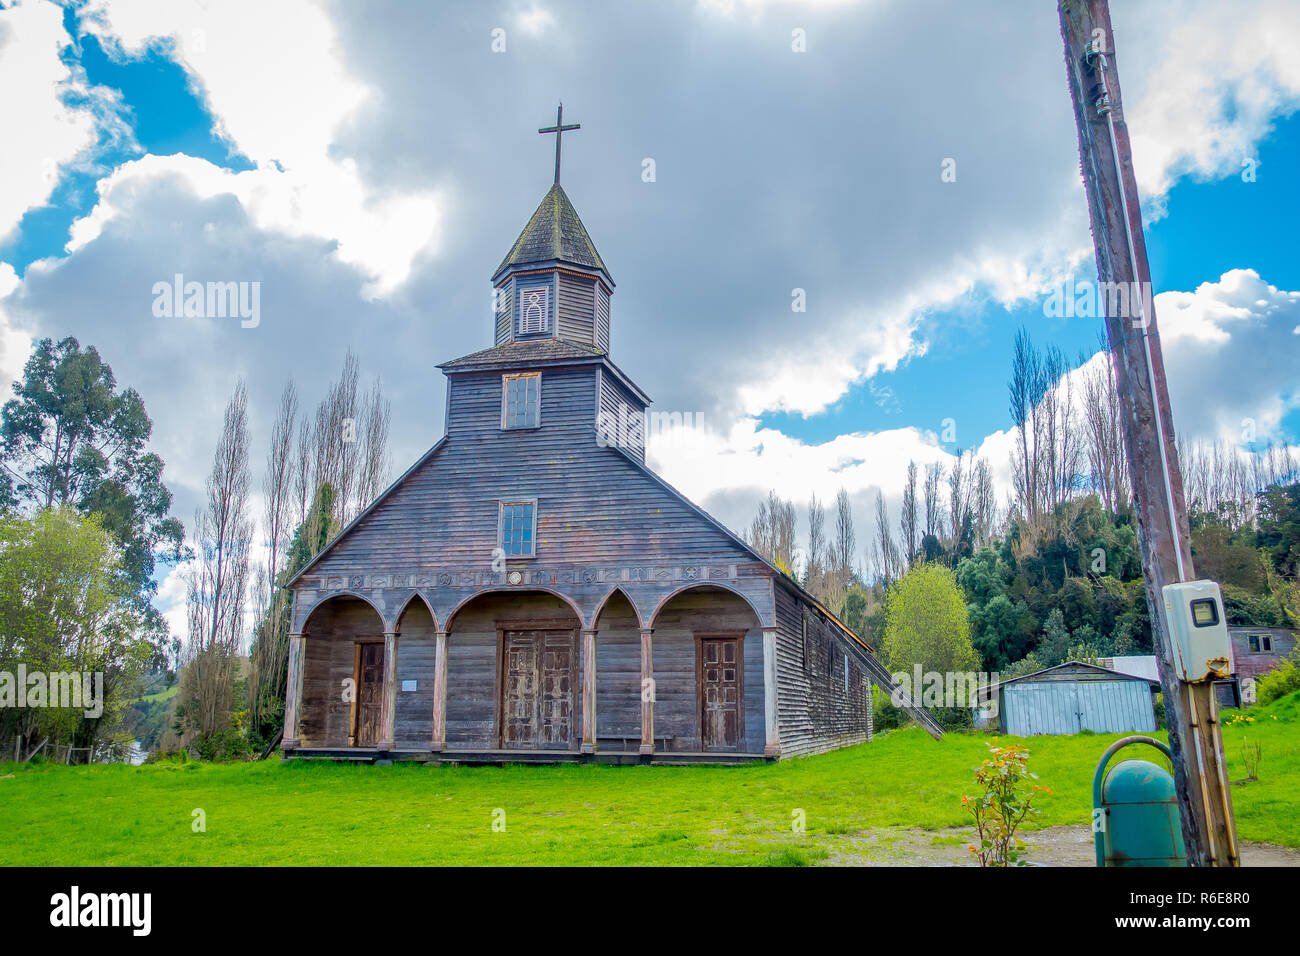 Chiloé, Chili - 27 septembre, 2018 : vue extérieure de l'église, l'un de quinchao world heritage églises en bois situé à l'île de Chiloé, au sud du Chili en belle journée ensoleillée avec fond de ciel bleu Banque D'Images